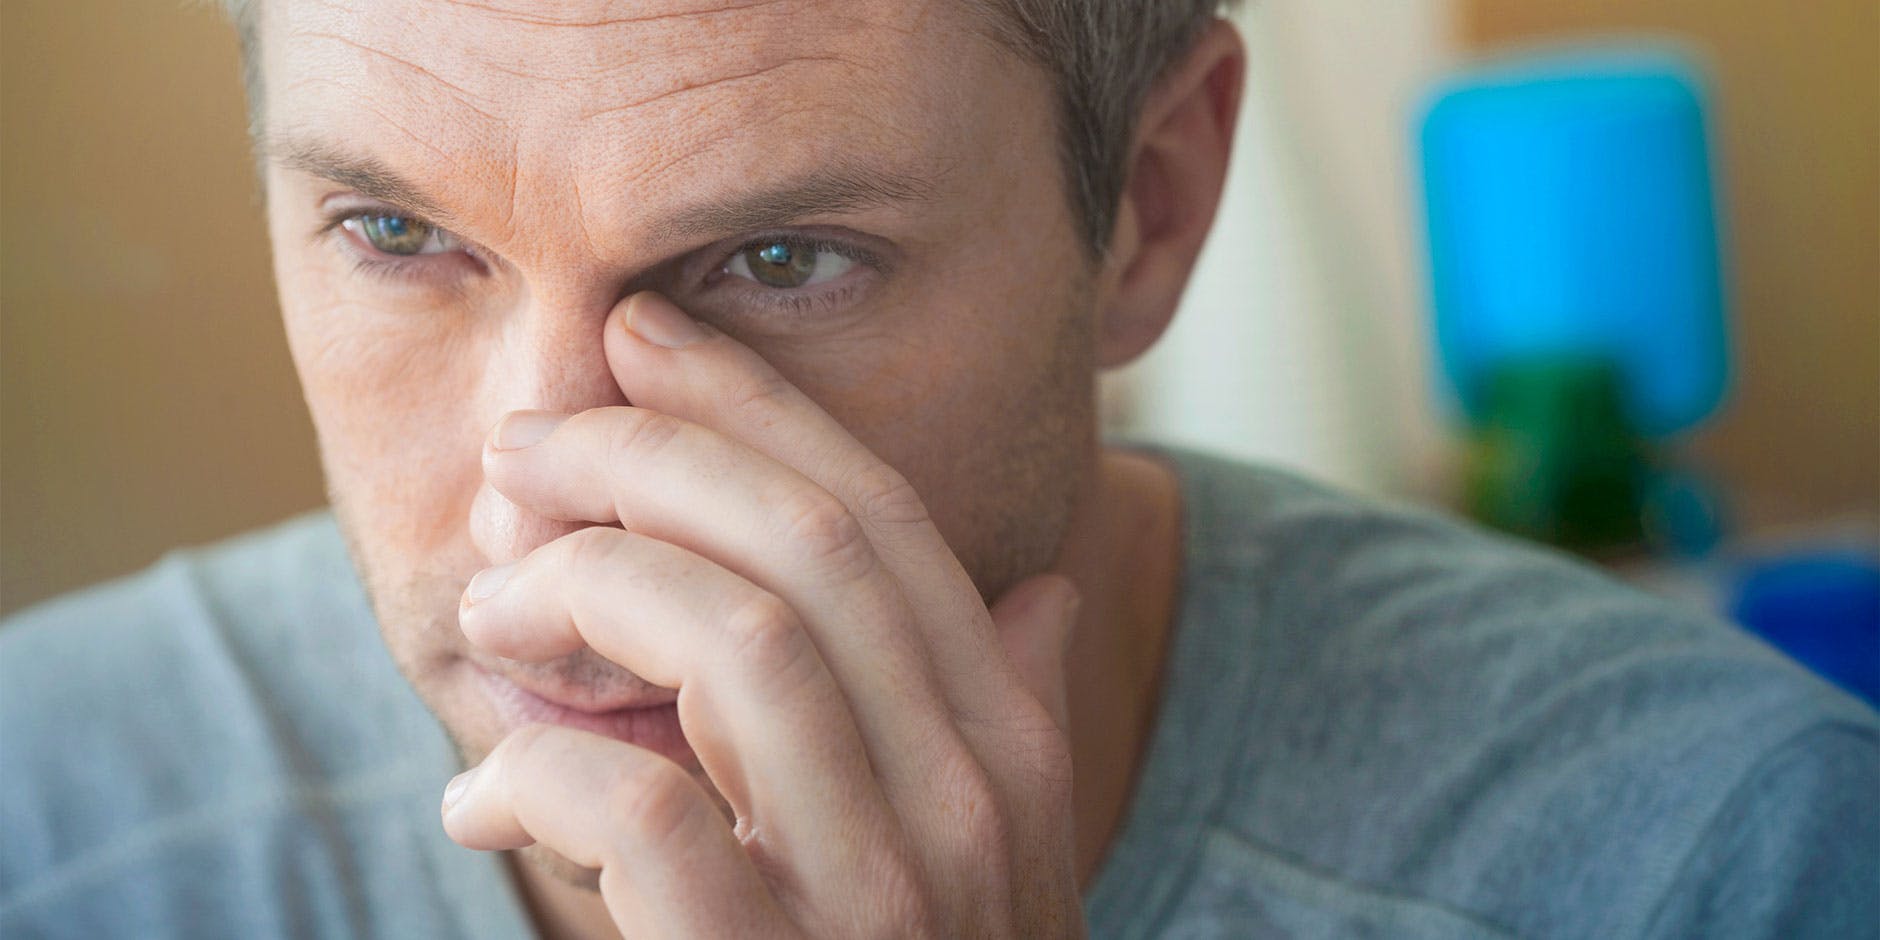 Homme souffrant de congestion nasale en train de se masser les sinus